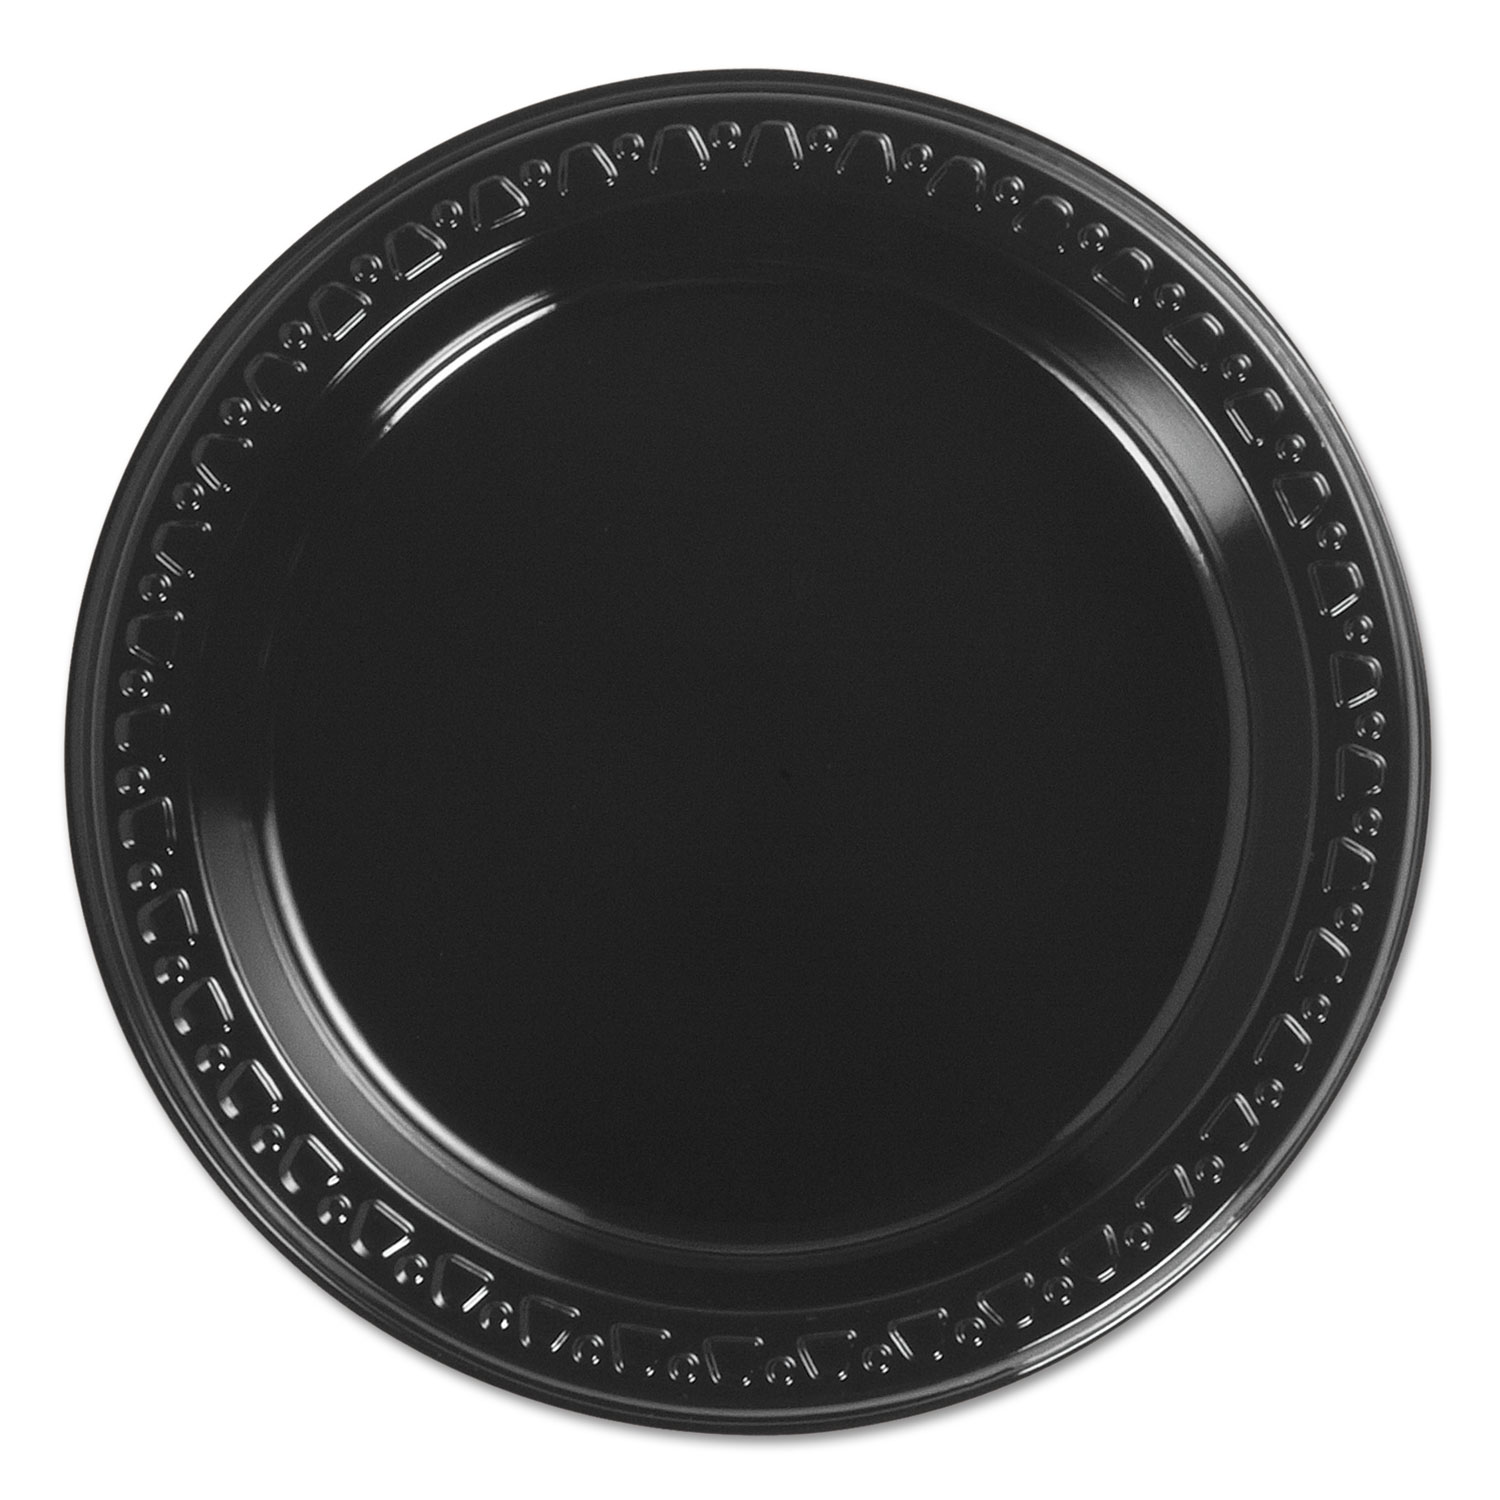  Chinet 81406 Heavyweight Plastic Plates, 6 Inch, Black, Round, 125/BG, 8 BG/CT (HUH81406C) 